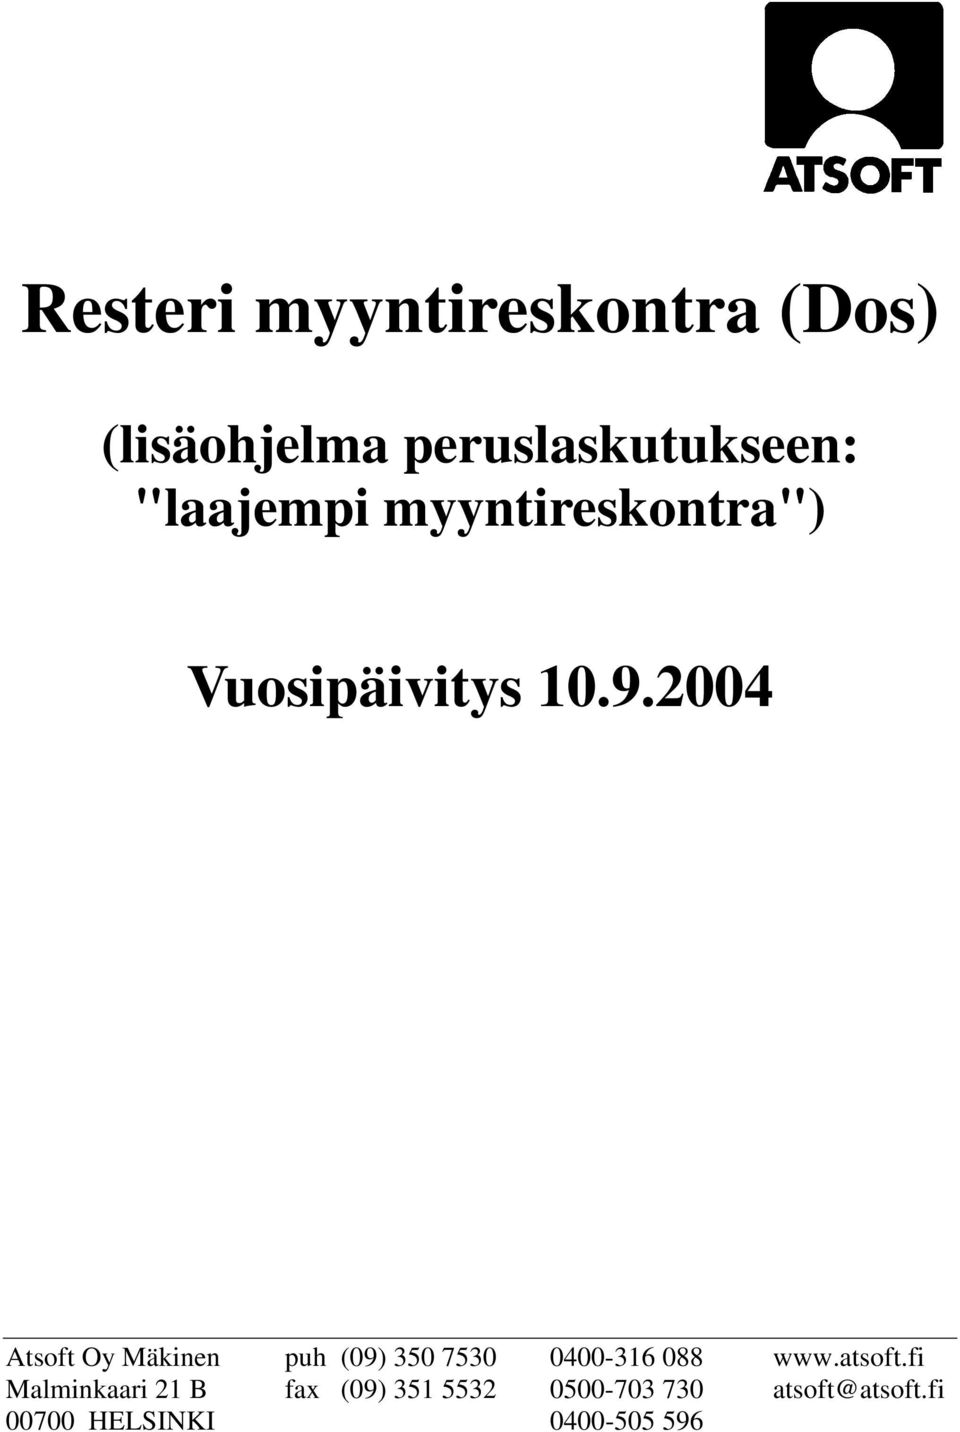 2004 Atsoft Oy Mäkinen puh (09) 350 7530 0400-316 088 www.atsoft.